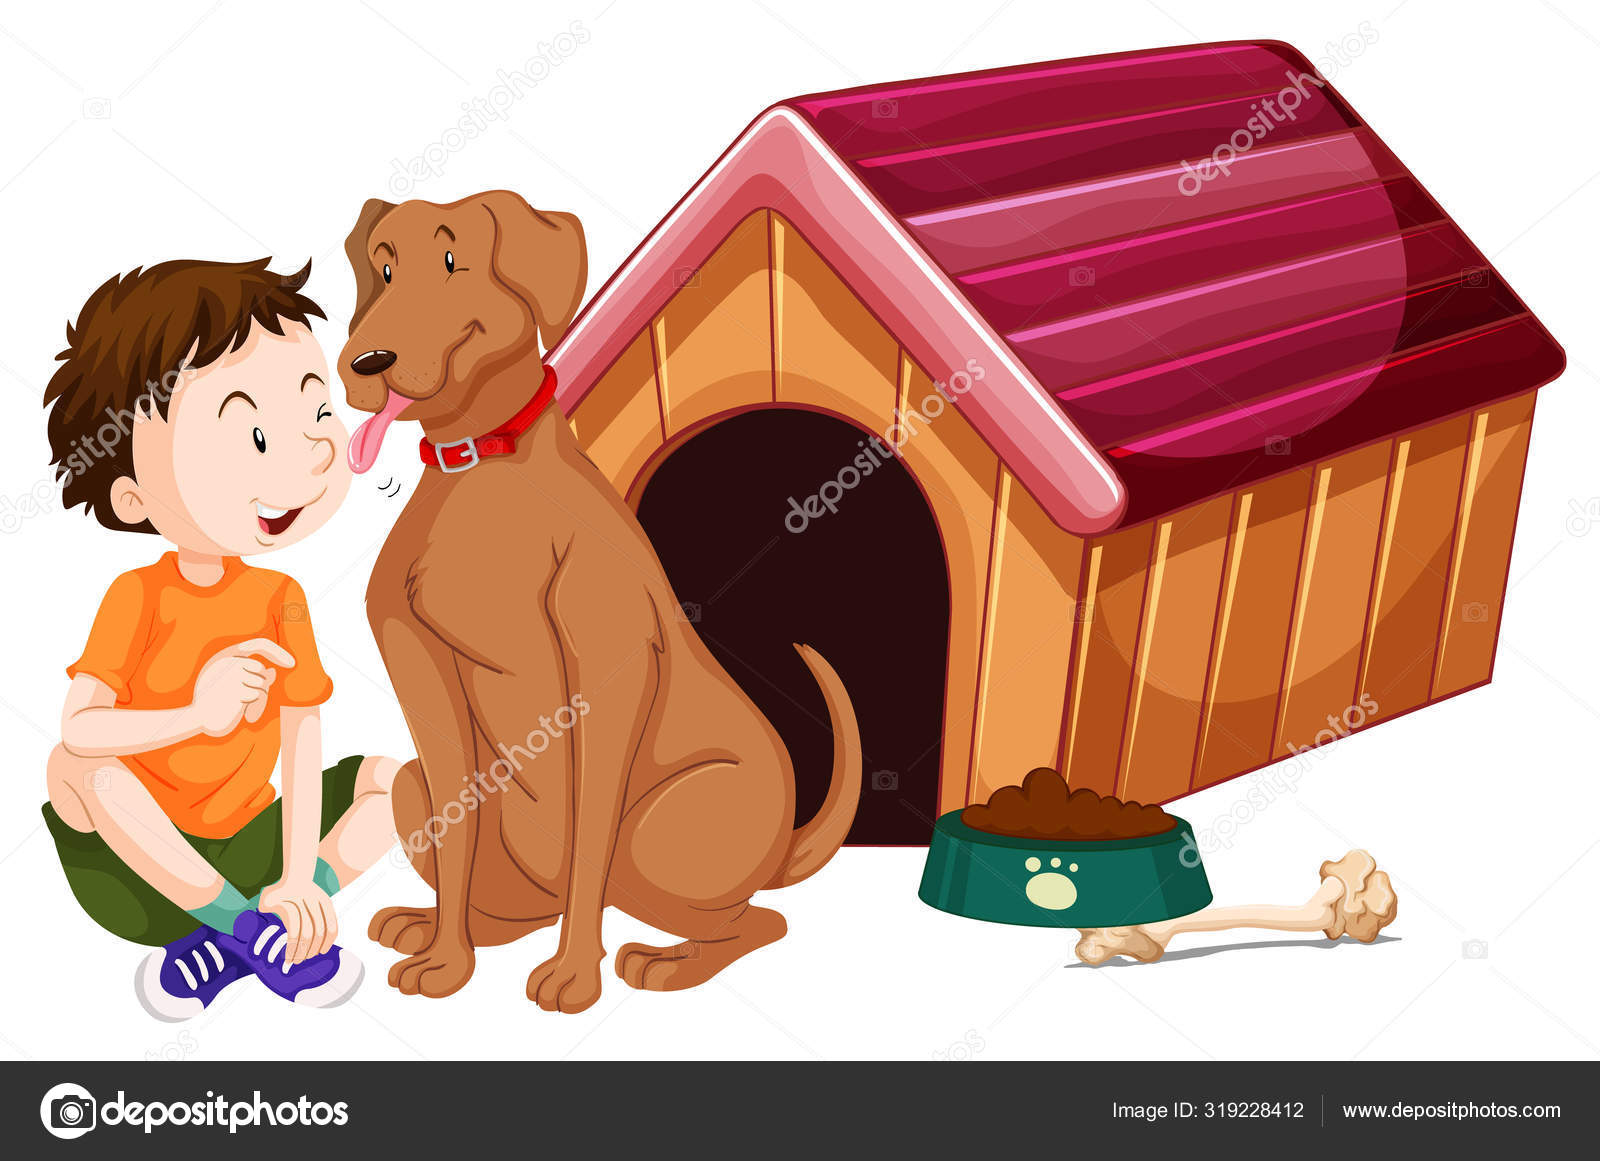 Картинка будка для собаки для детей: D1 81 d0 be d0 b1 d0 b0 d1 87 d1 8c d1 8f d0 b1 d1 83 d0 b4 d0 ba d0 b0: стоковые векторные изображения, иллюстрации